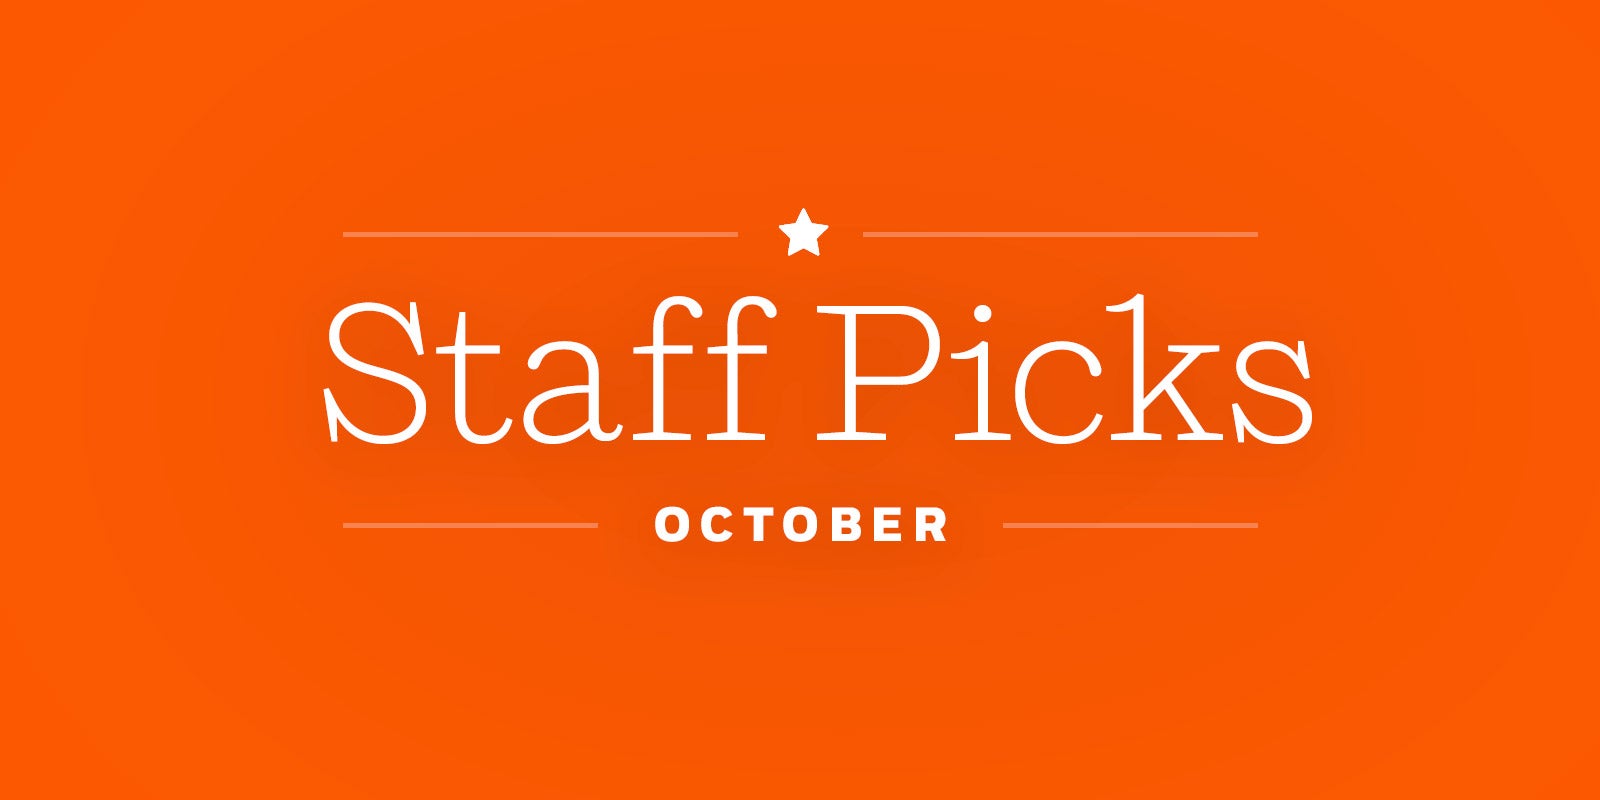 **October Staff Picks**